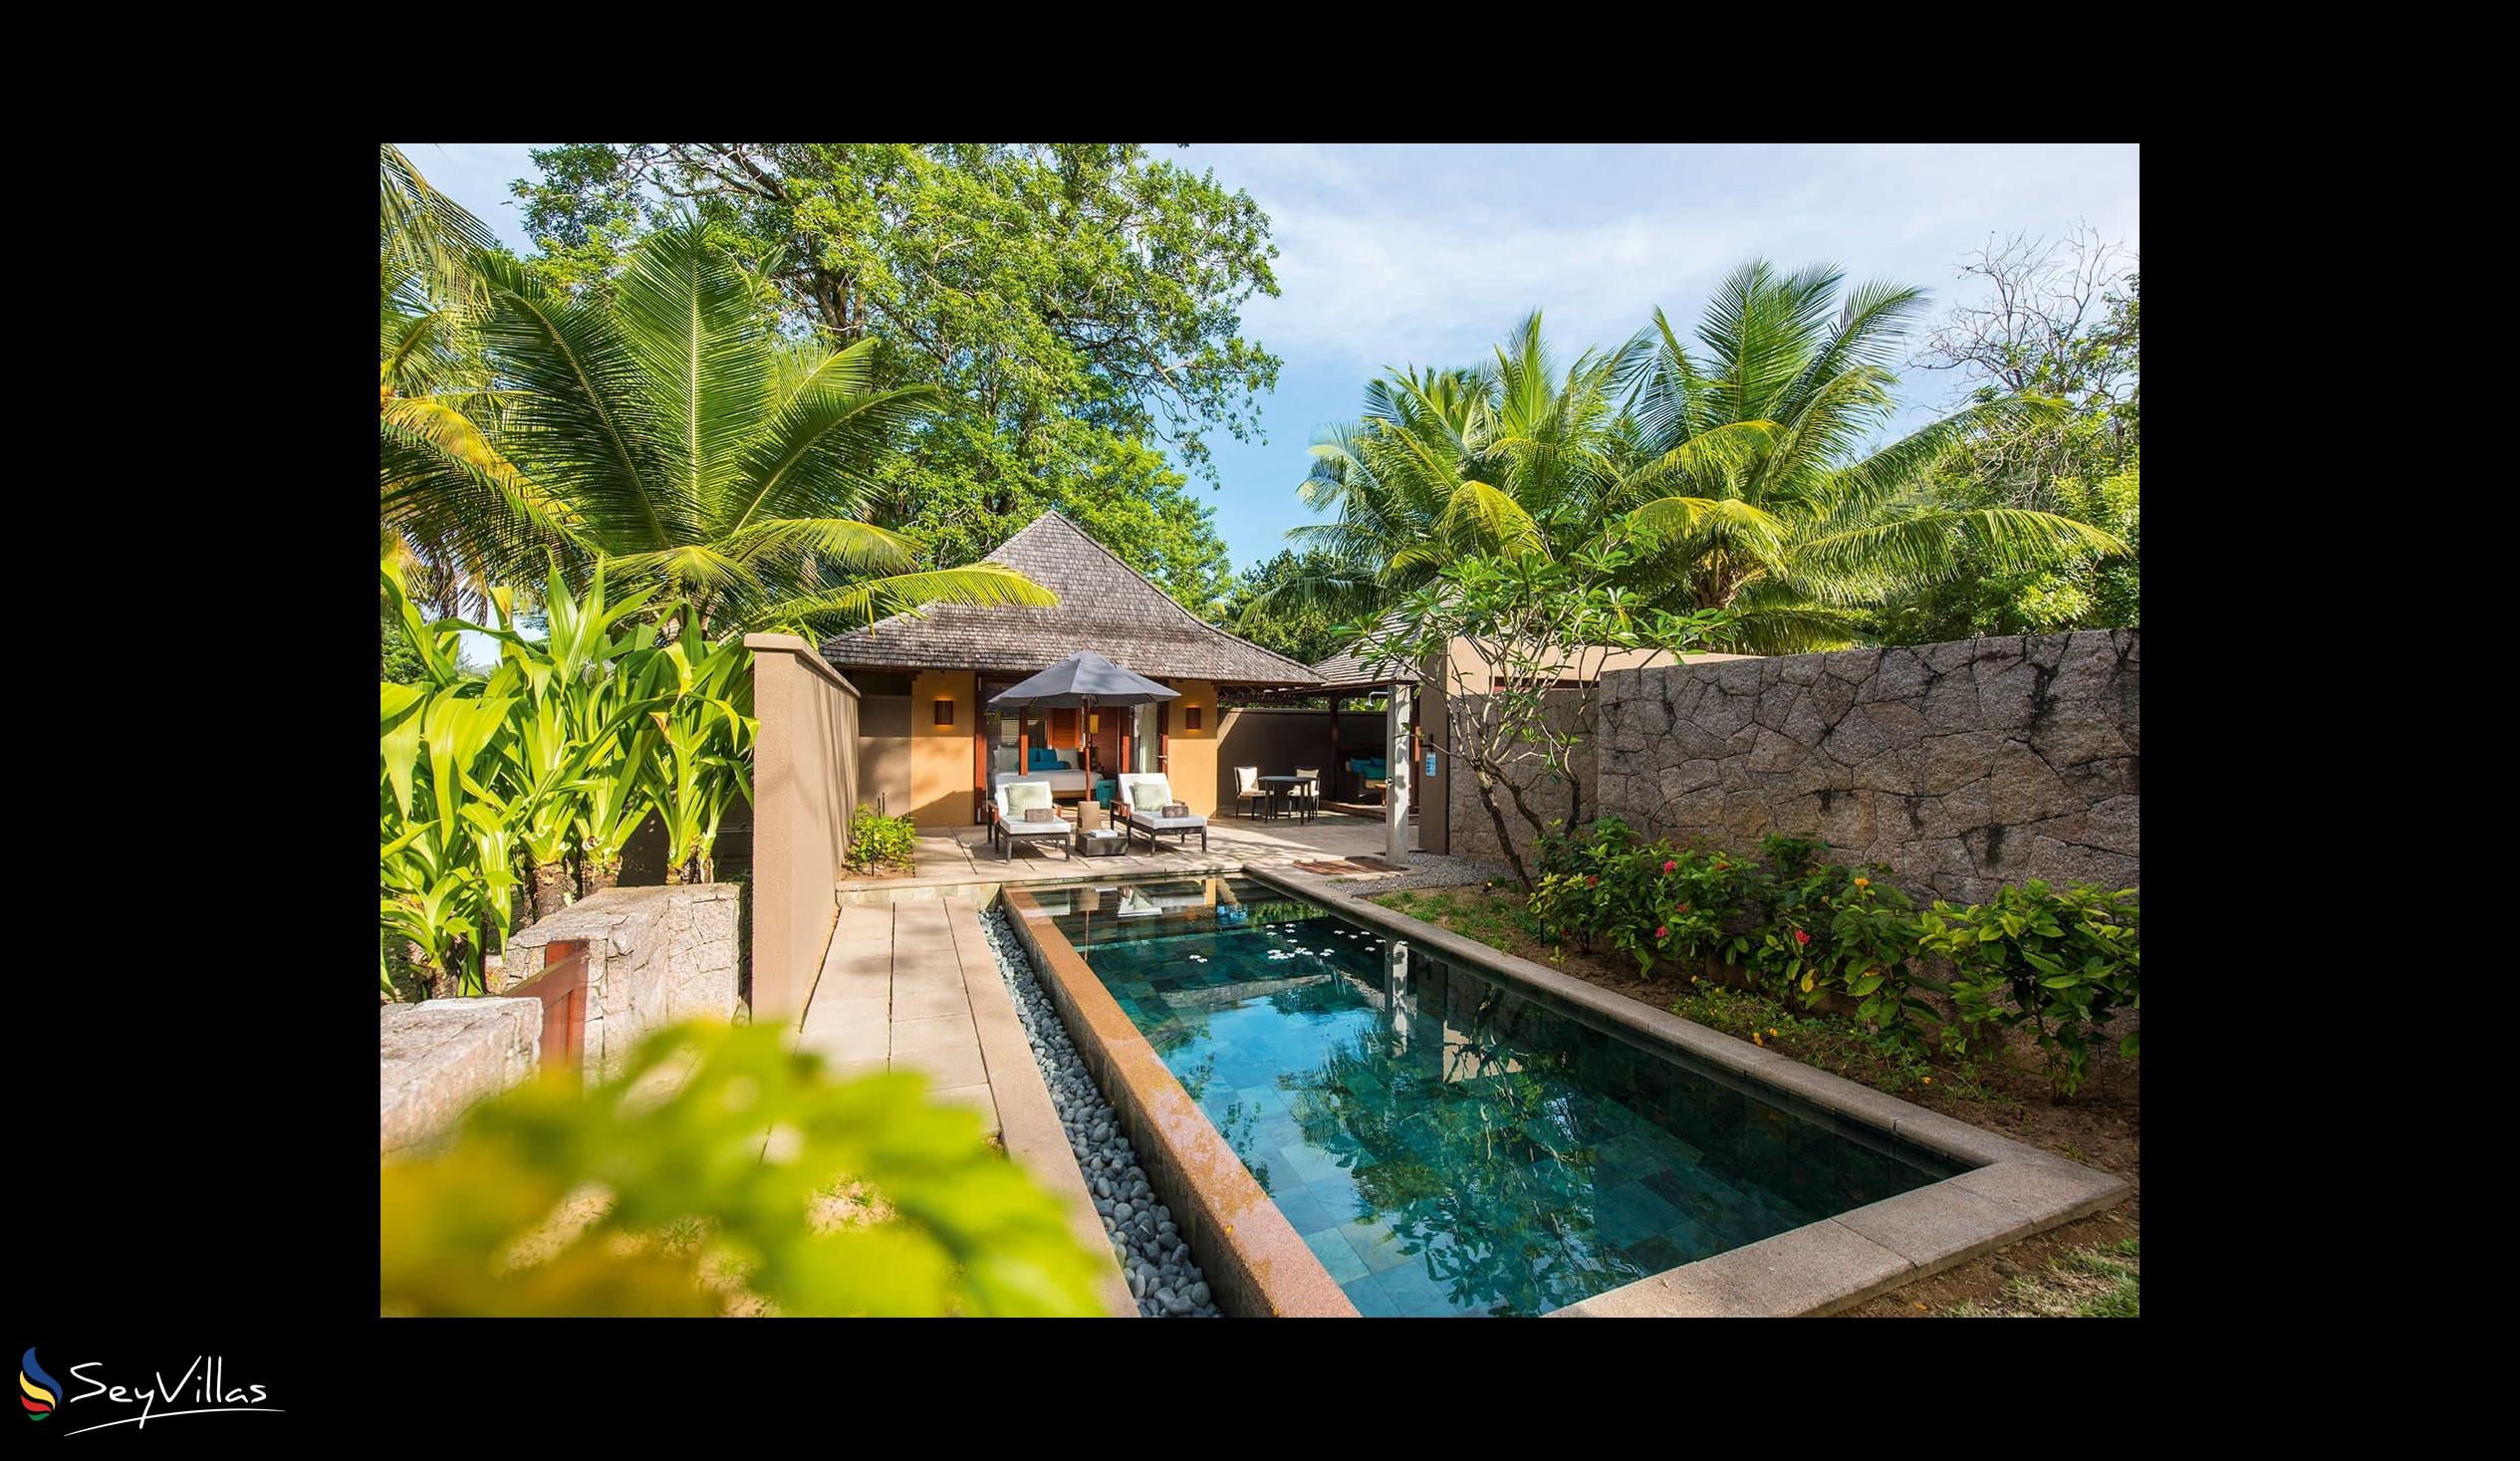 Foto 32: Constance Ephelia Seychelles - Villa sulla spiaggia con 2 camere - Mahé (Seychelles)